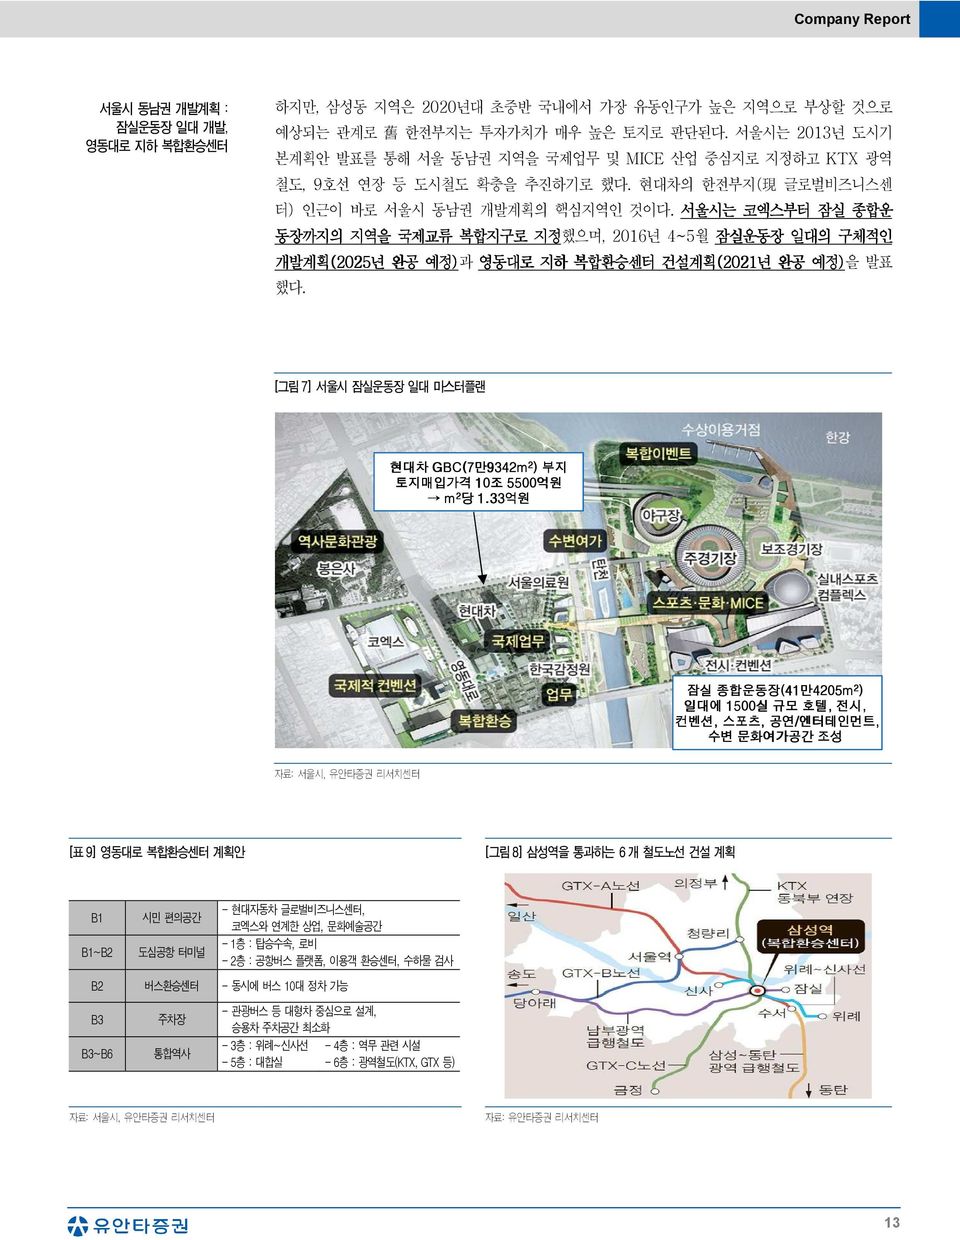 서울시는 코엑스부터 잠실 종합운 동장까지의 지역을 국제교류 복합지구로 지정했으며, 216년 4~5월 잠실운동장 일대의 구체적인 개발계획(225 (225년 완공 예정)과 영동대로 지하 복합환승센터 건설계획(221 (221년 완공 예정)을 발표 했다.